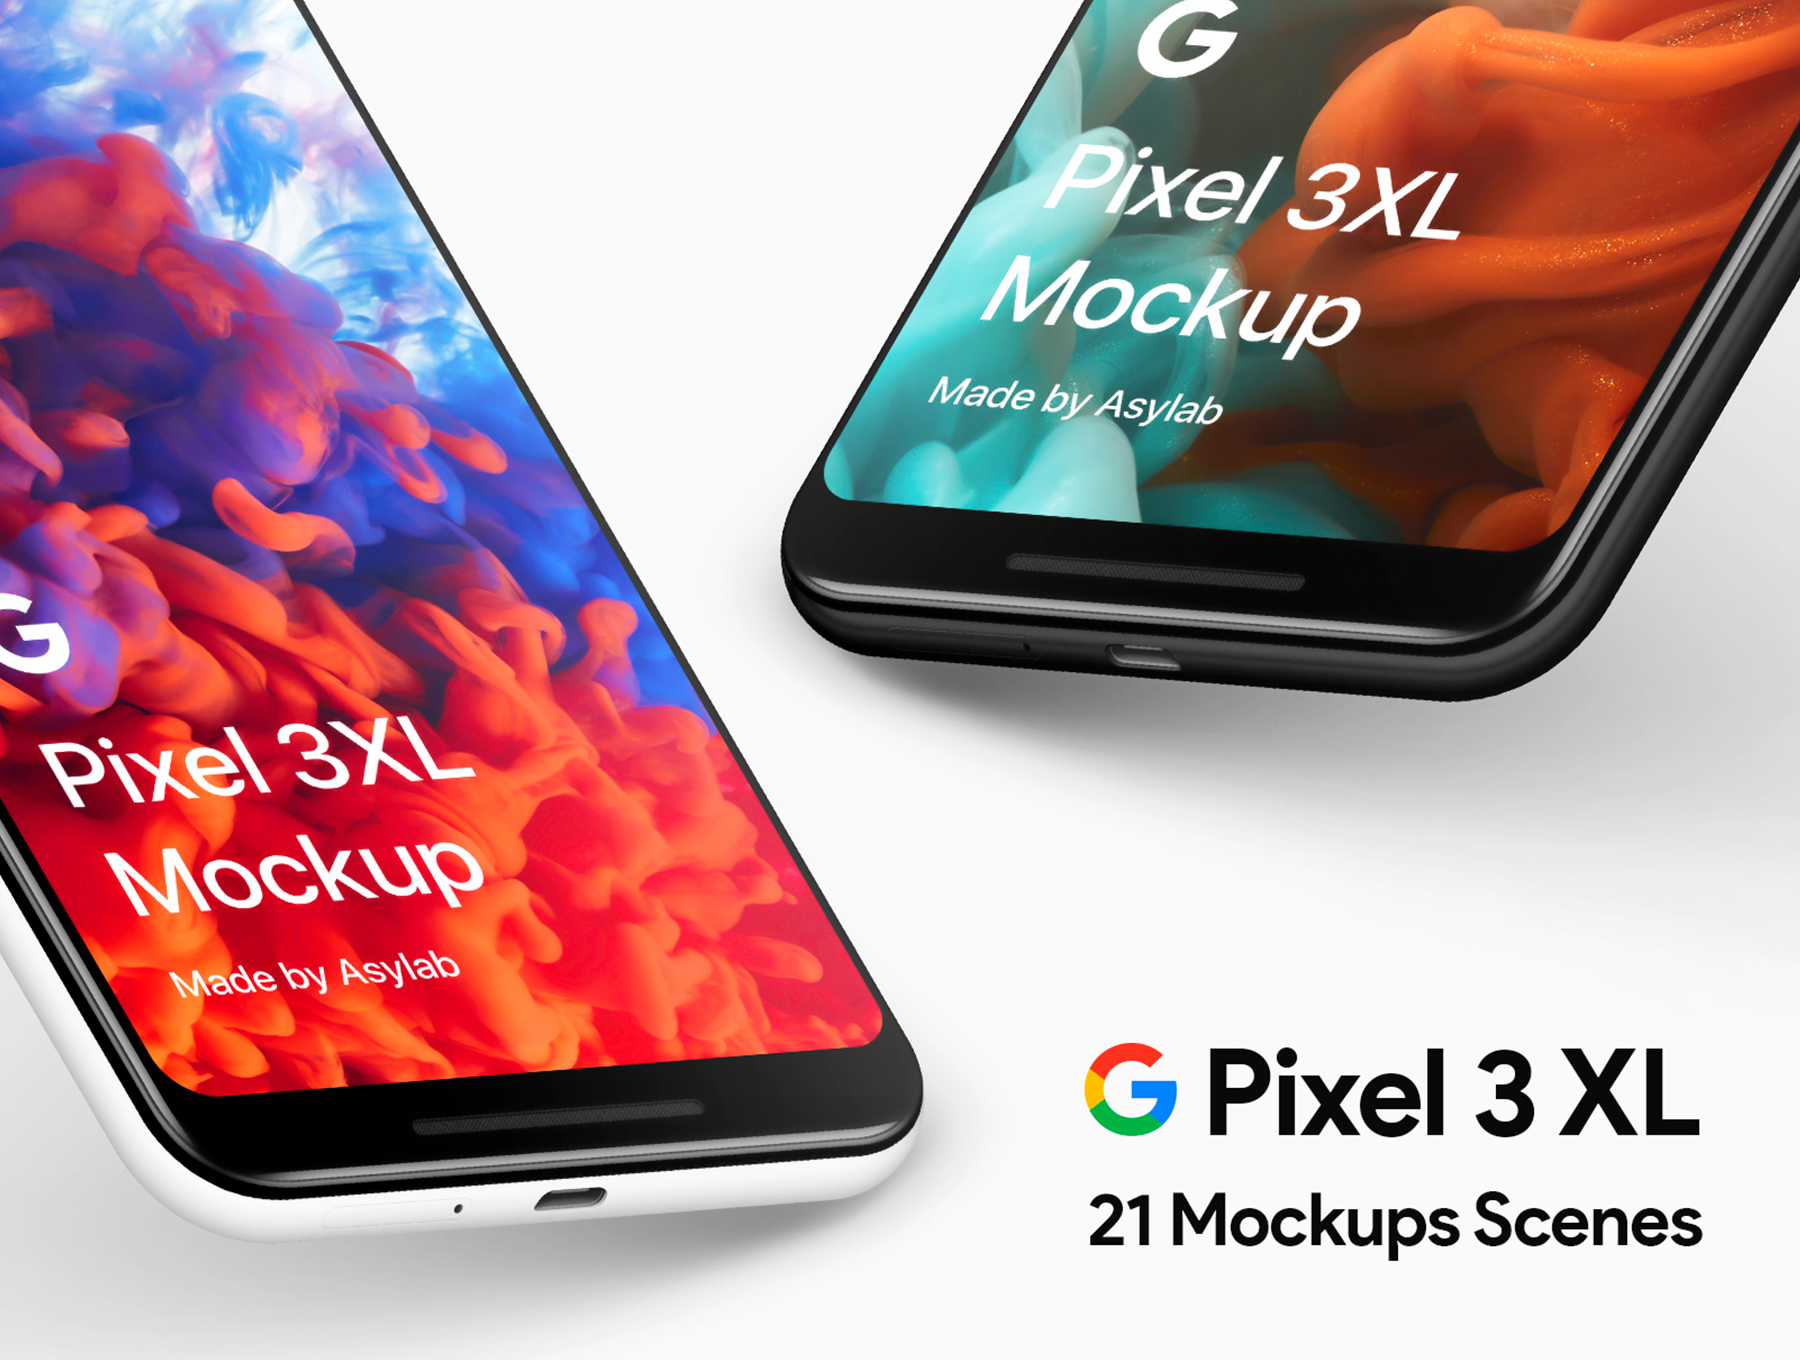 谷歌像素3 XL模型 Google Pixel 3 XL M